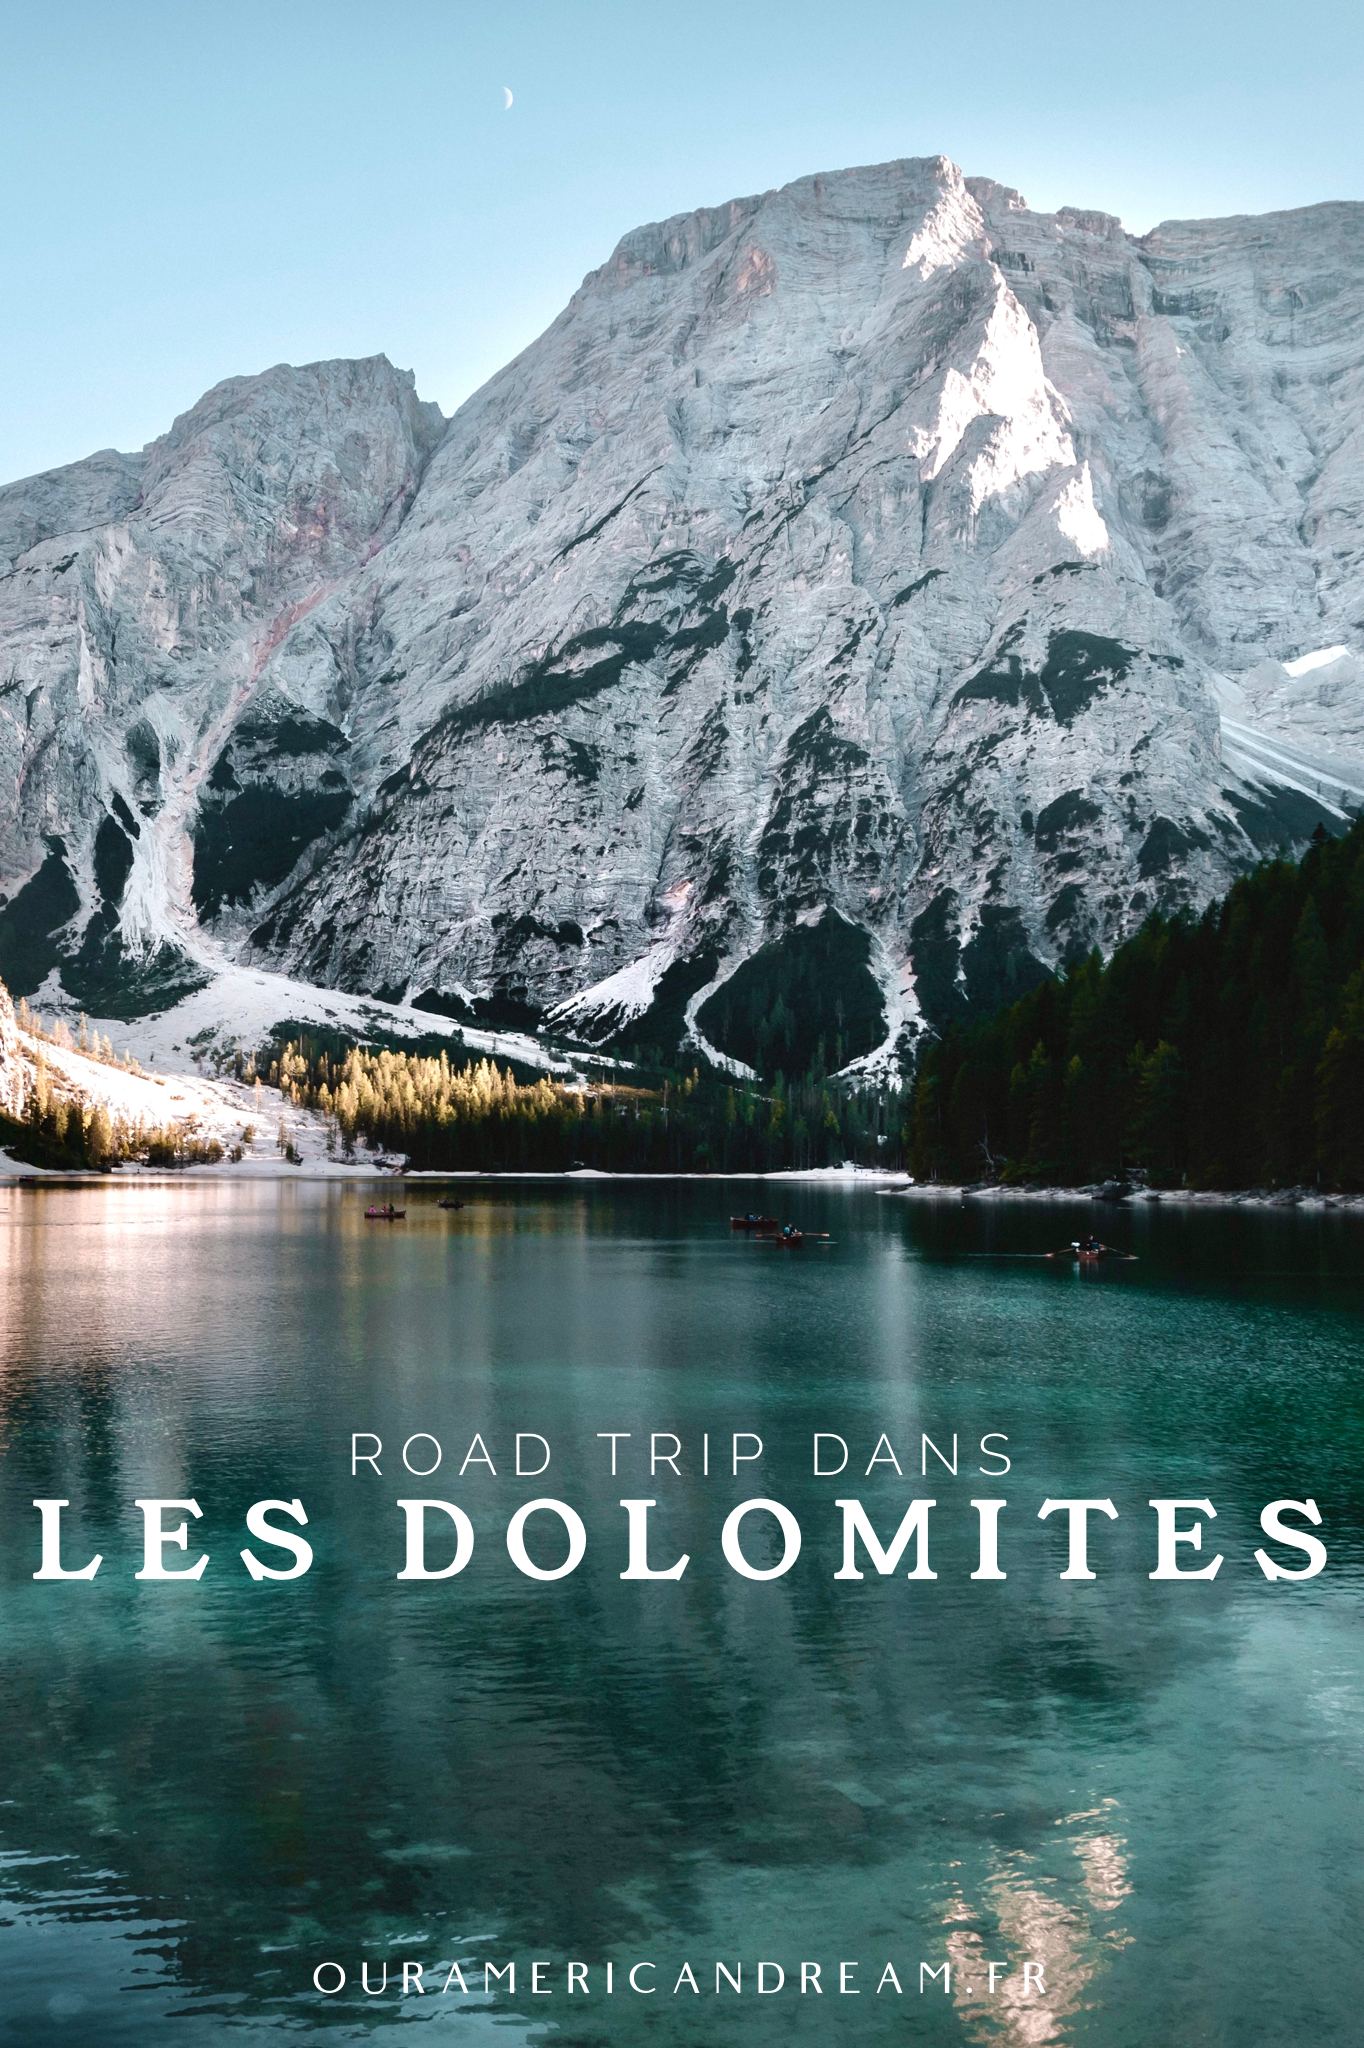 Road trip dans les Dolomites | Pinterest